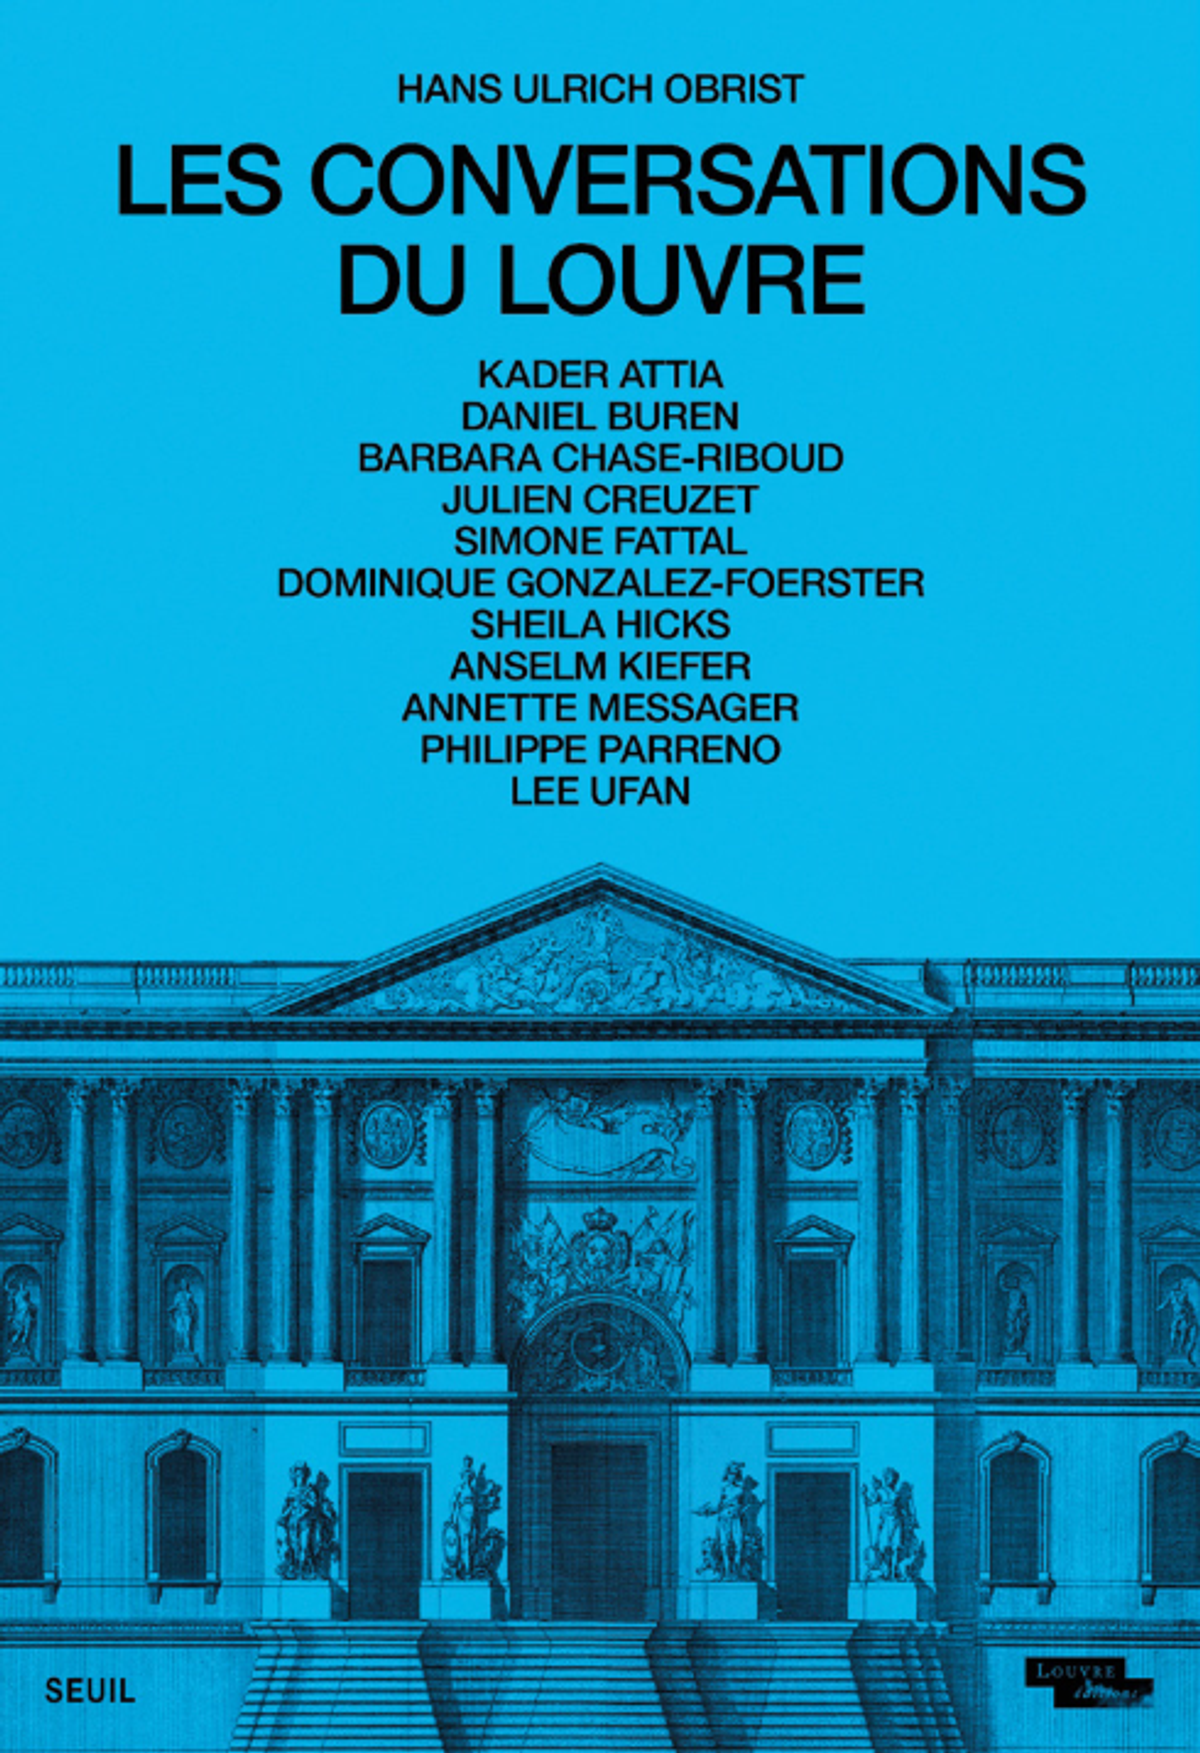 Hans Ulrich Obrist, Les Conversations du Louvre, Paris, Seuil et musée du Louvre, 2023, 176 pages, 20,90 euros.